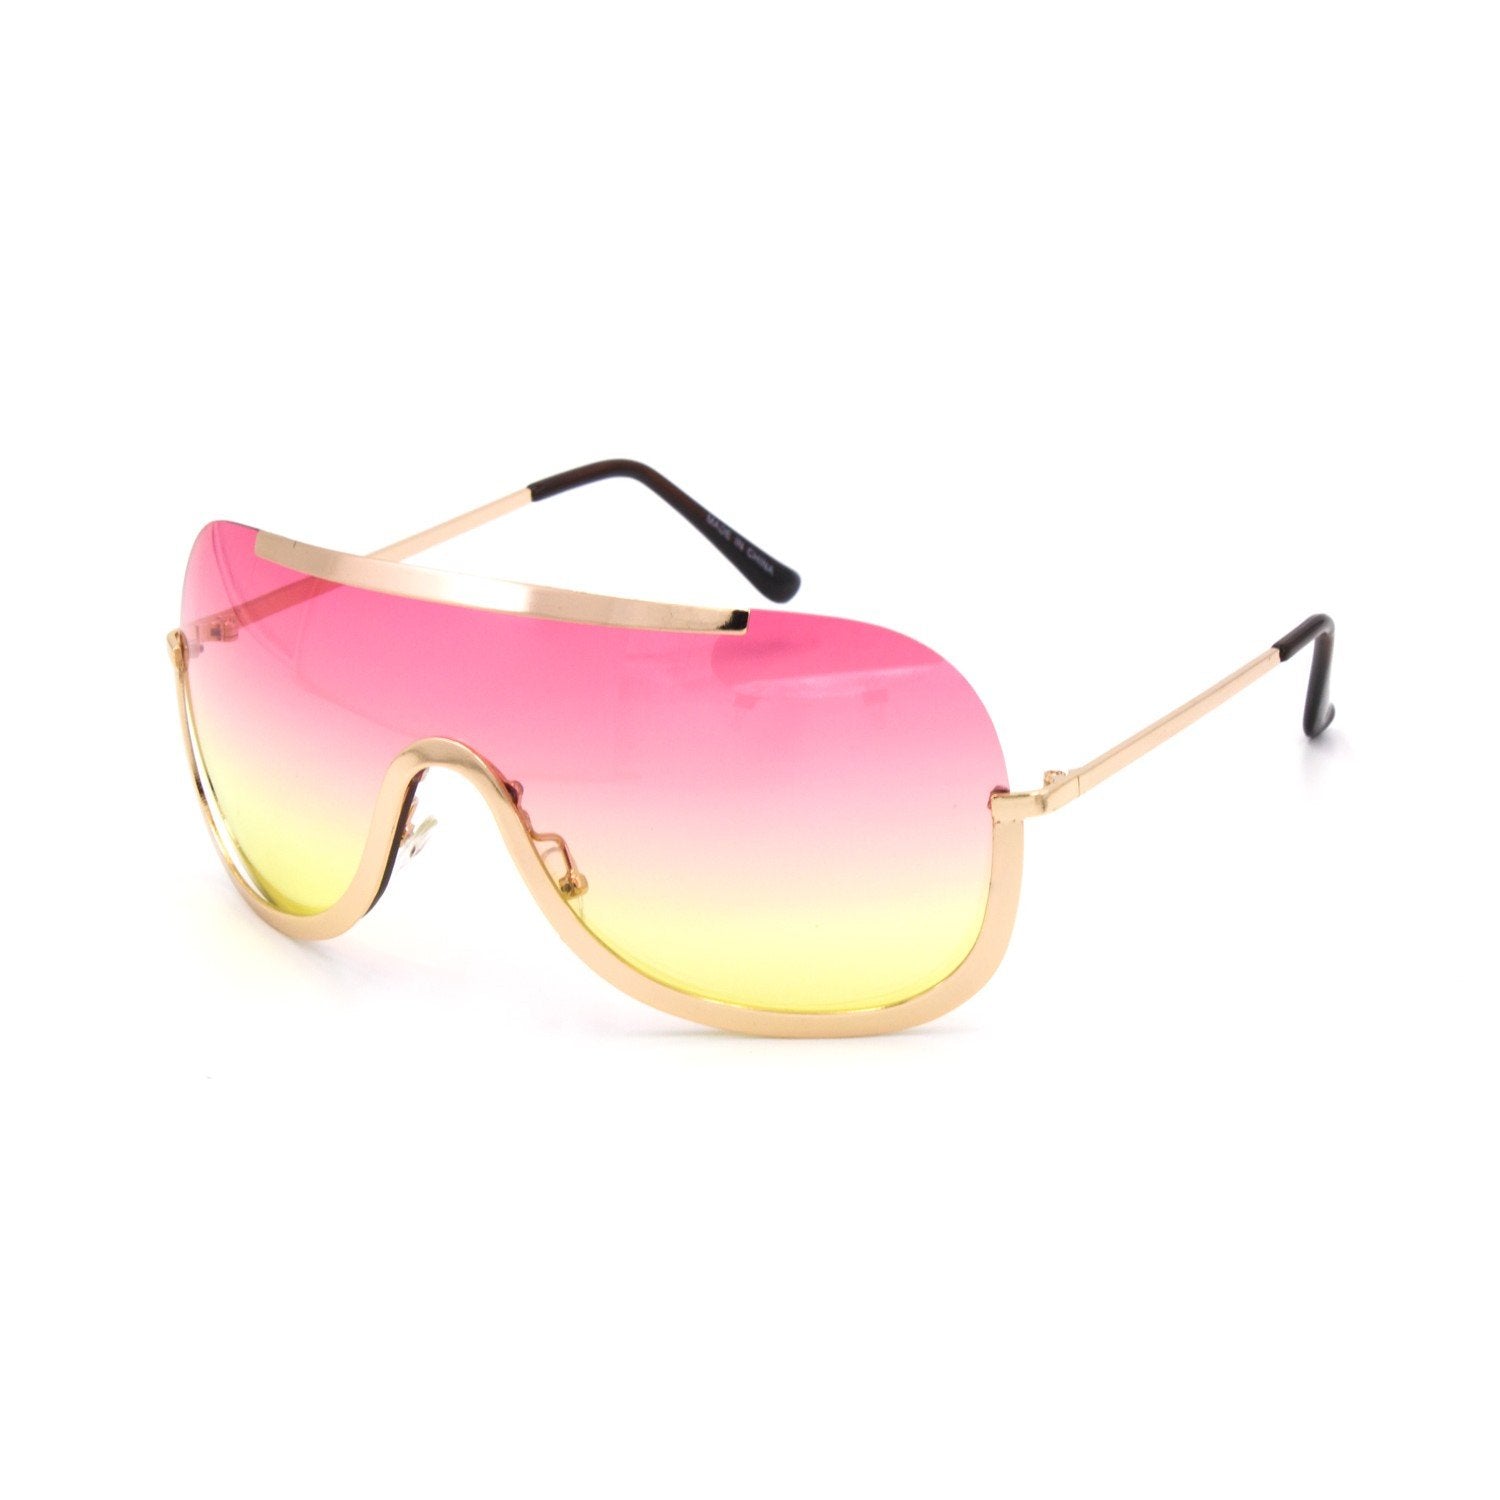 Joselyn Sunglasses - Final Sale